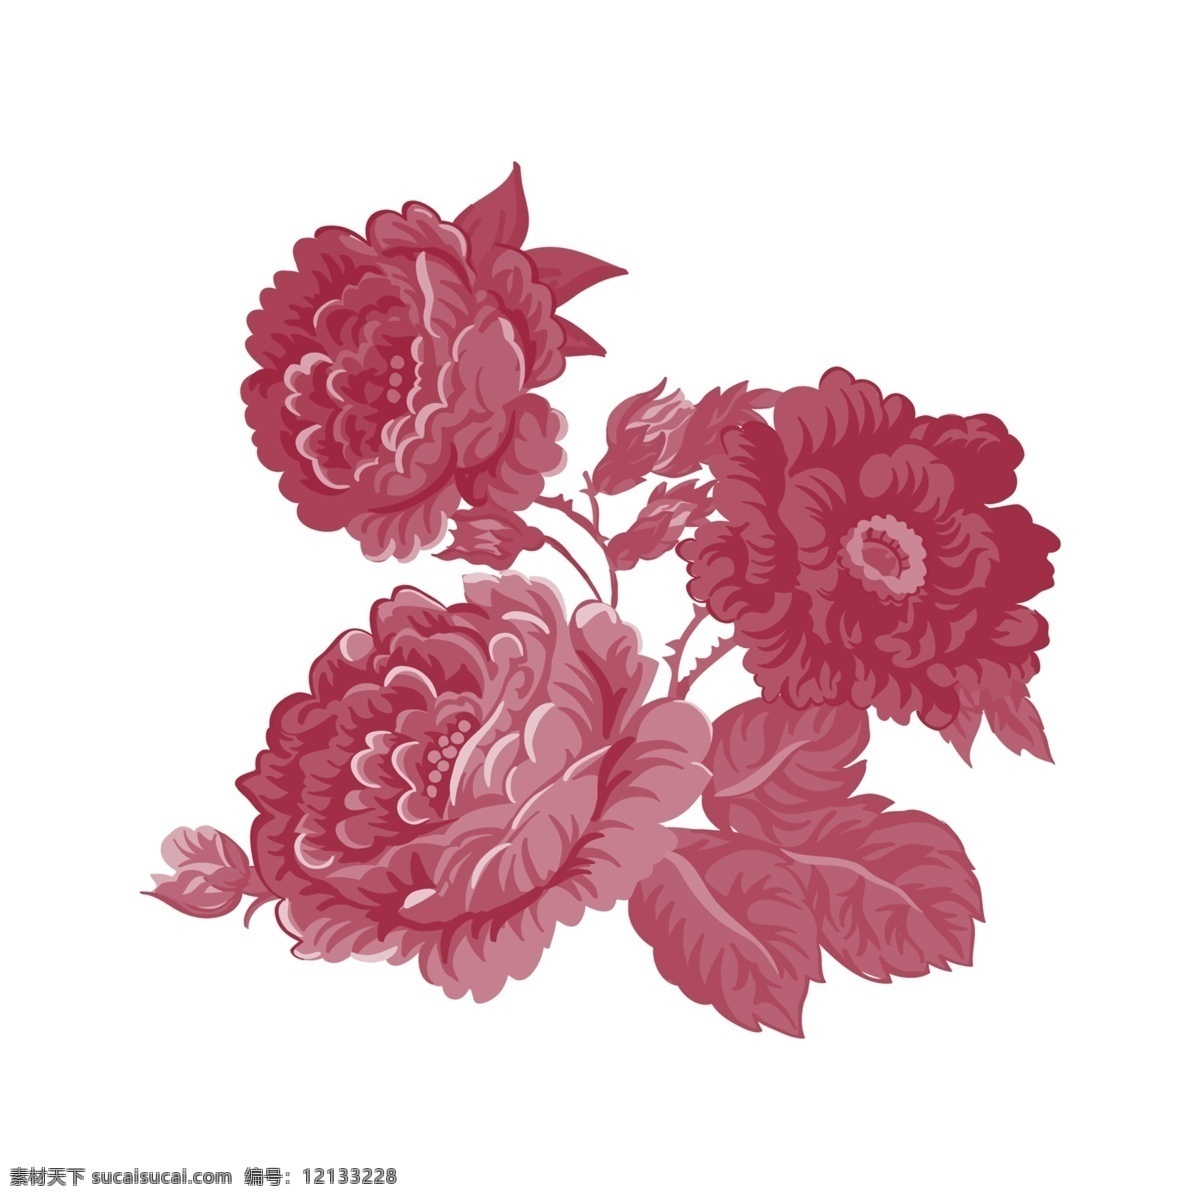 手绘 水彩 卡通 红色 花朵 手绘花朵 水彩花朵 卡通花朵 红色花朵 装饰图案 植物 大叶子 千库原创 免抠图png